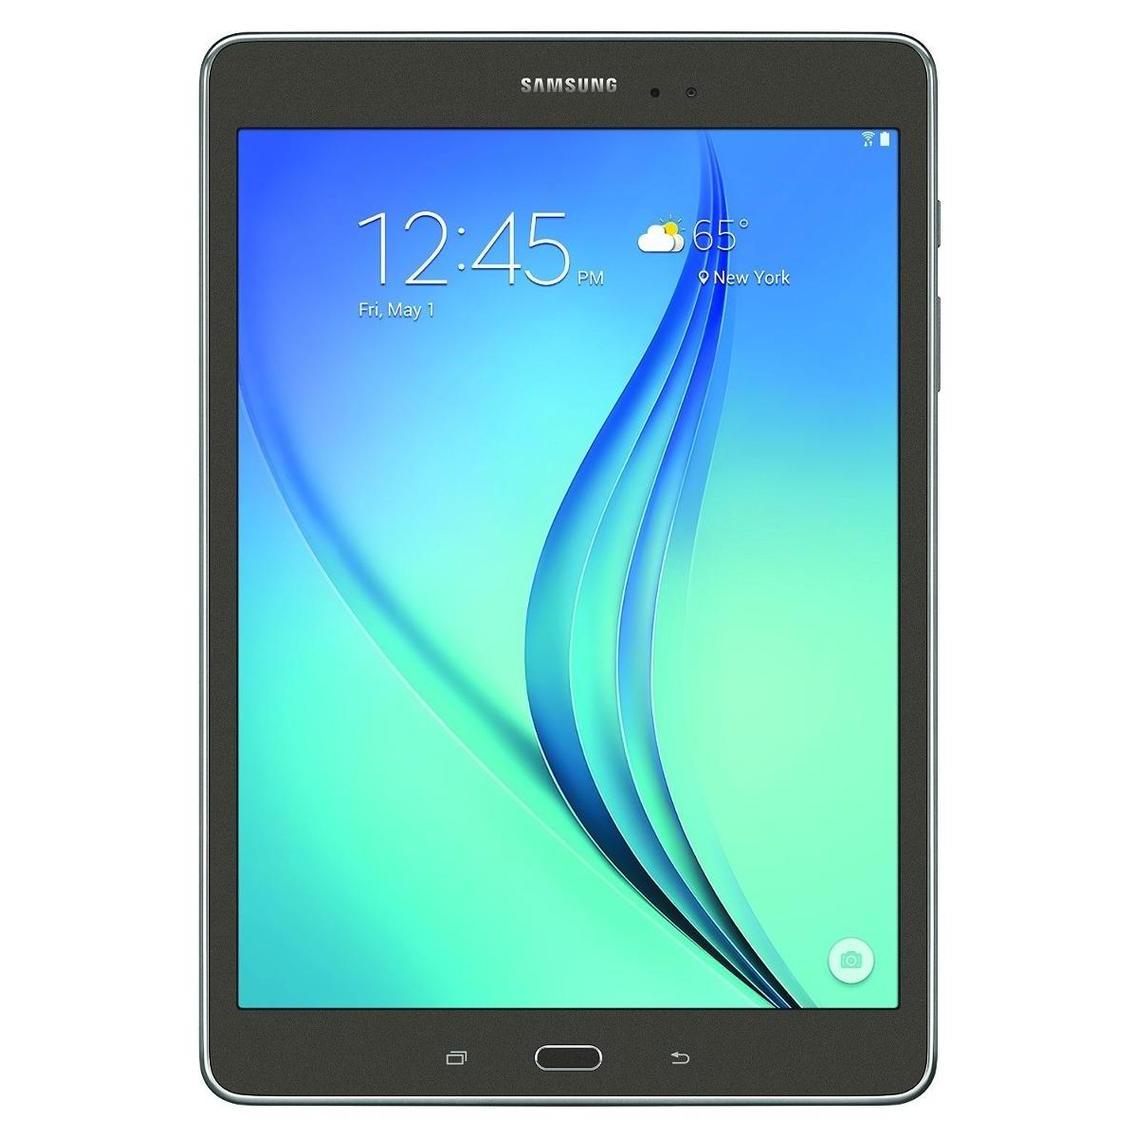  Si buscas Samsung Galaxy Tab Tableta De 9.7 Pulgadas (16 Gb ) puedes comprarlo con BODECOR está en venta al mejor precio